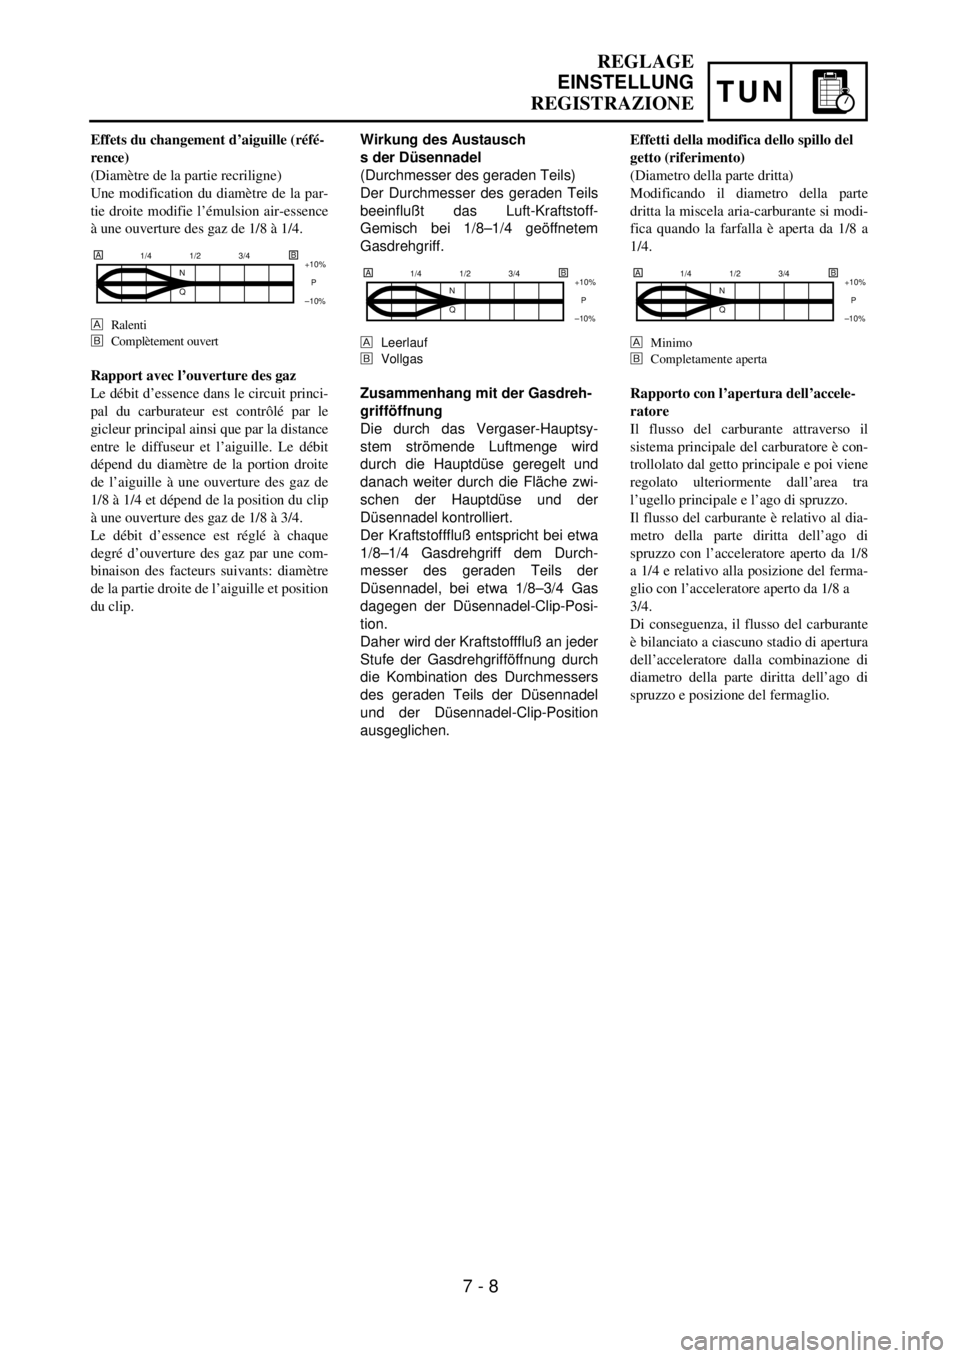 YAMAHA YZ250F 2001  Owners Manual TUN
Wirkung des Austausch
s der Düsennadel
(Durchmesser des geraden Teils)
Der Durchmesser des geraden Teils
beeinflußt das Luft-Kraftstoff-
Gemisch bei 1/8–1/4 geöffnetem
Gasdrehgriff.
Leerlauf
